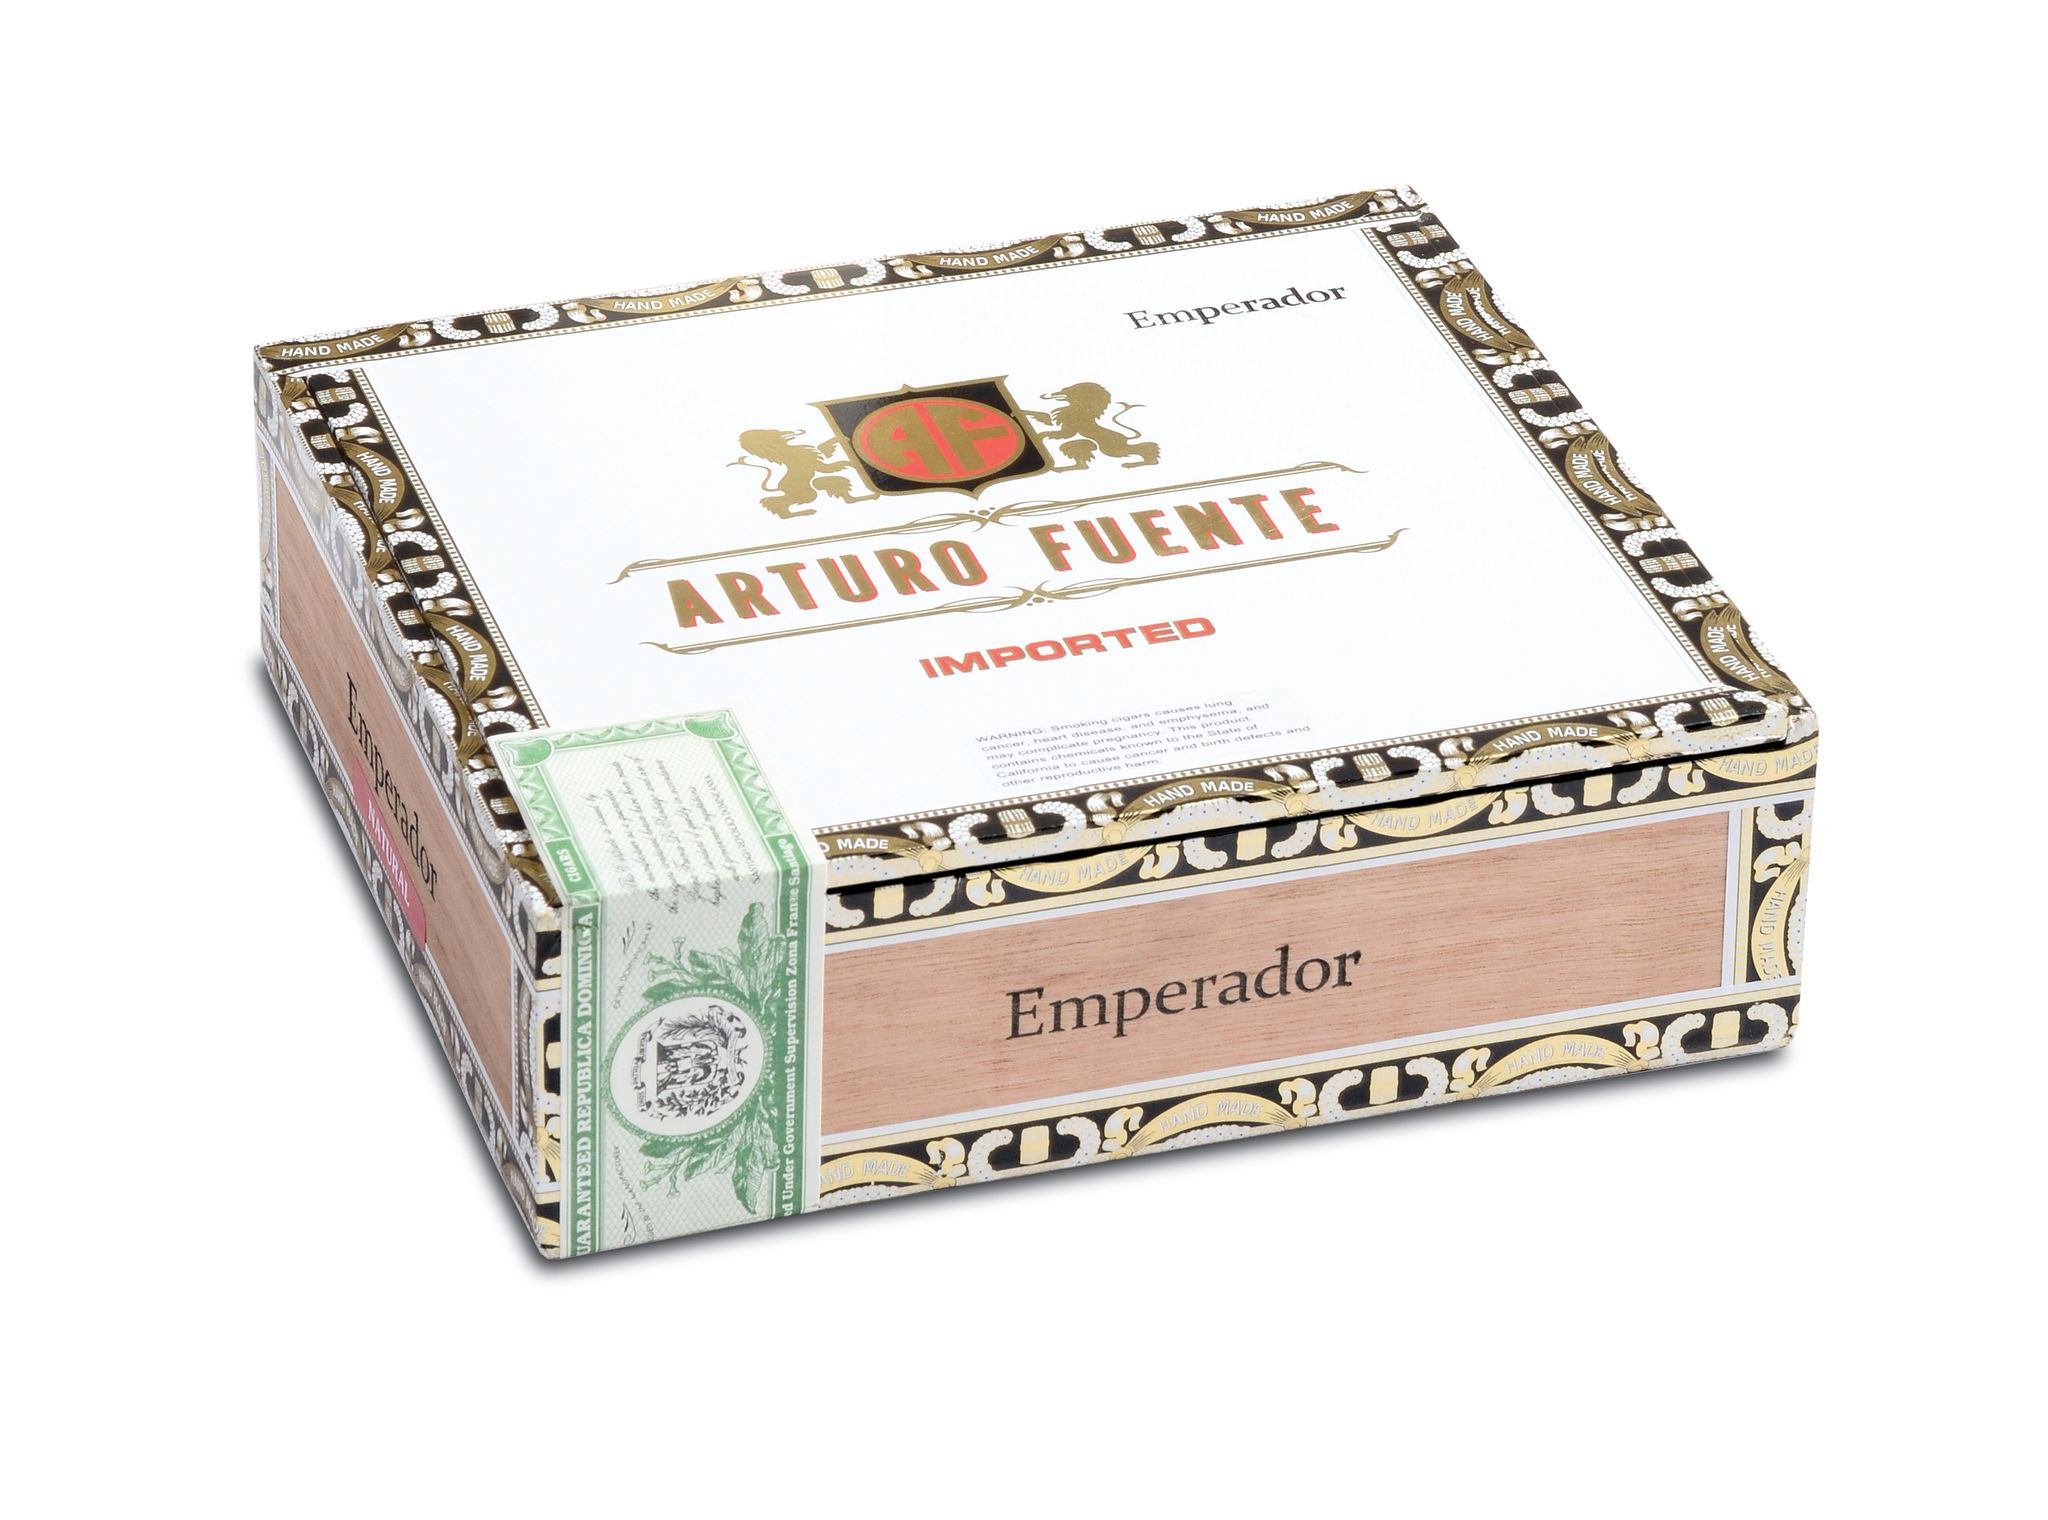 Closed box of 30 count Arturo Fuente Especiales Emperador cigars